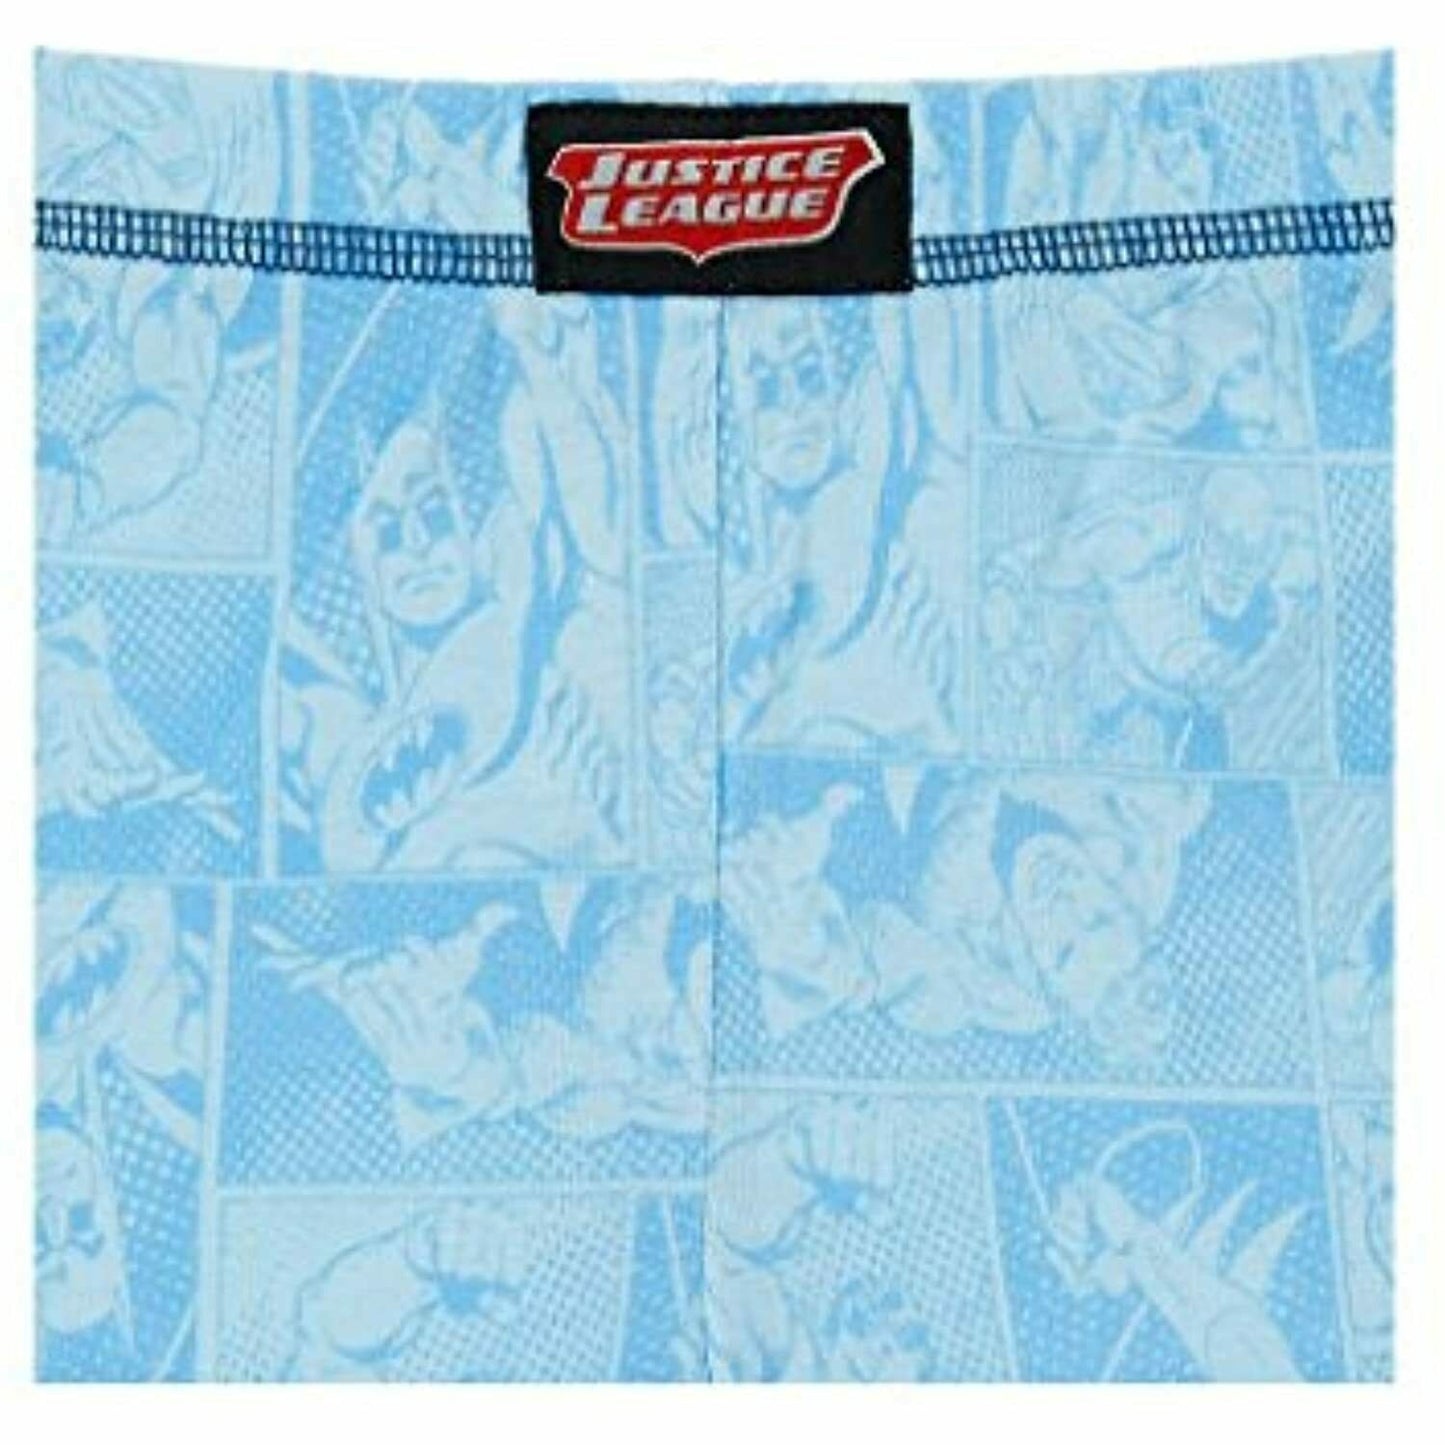 Justice League Boys' 4-Piece Pajama Set PJs 2T 3T Blue Grey